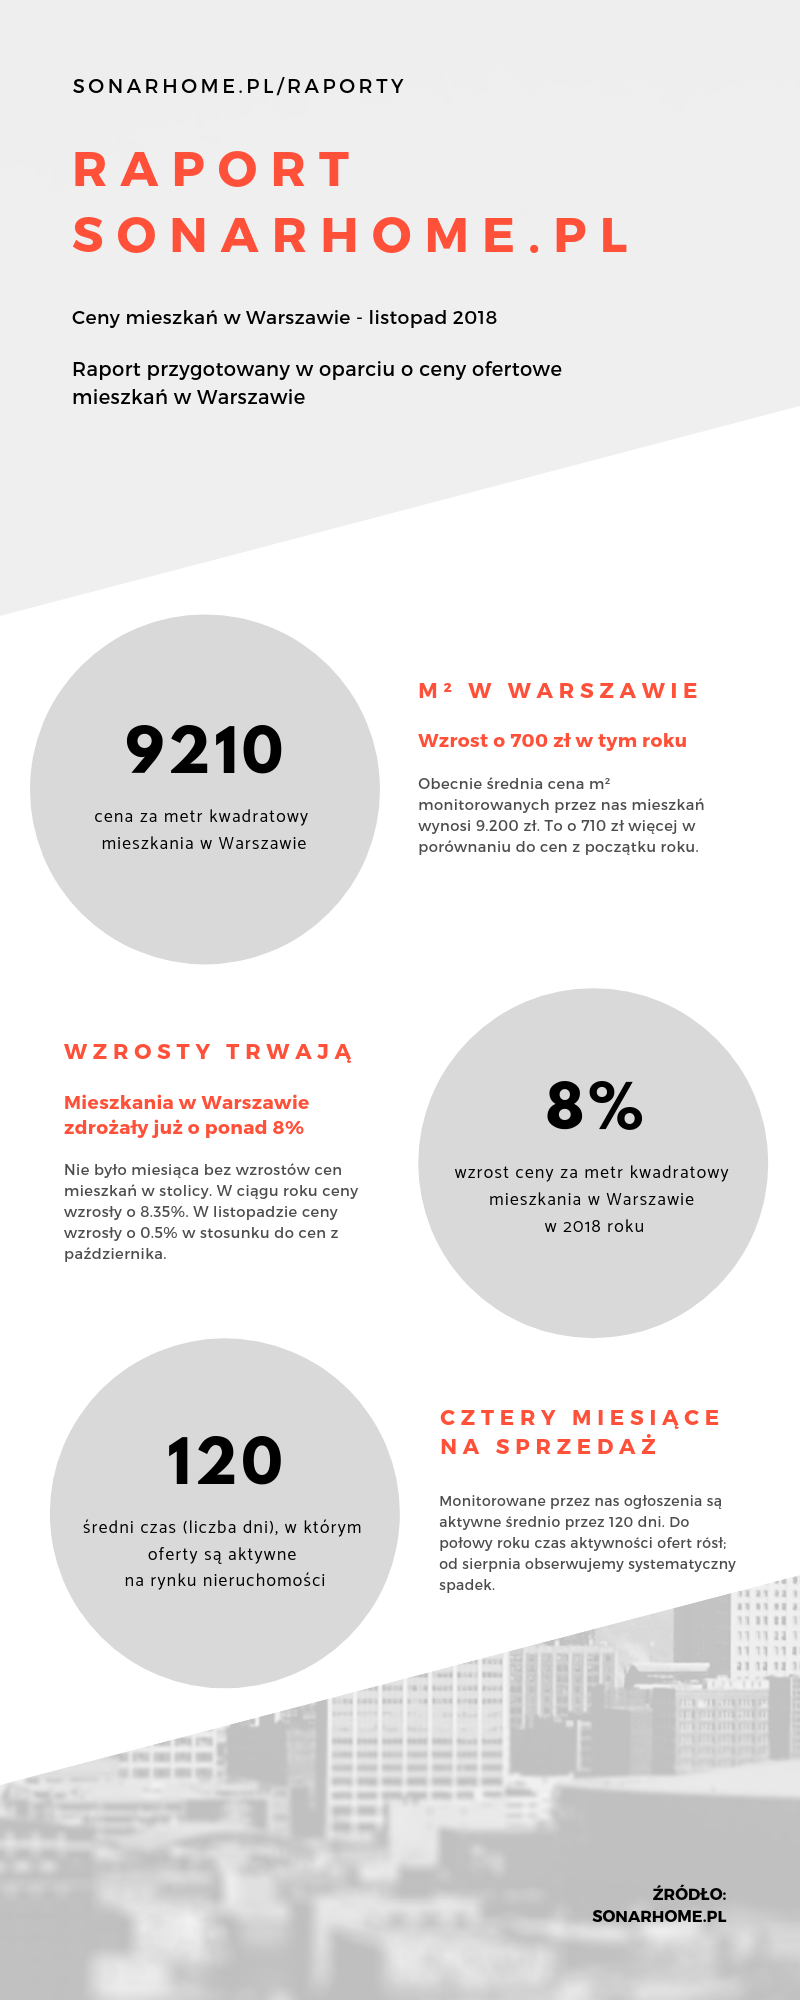 Ceny mieszkań w Warszawie - jak kształtowały się w ciągu ostatnich miesięcy? (+infografika)